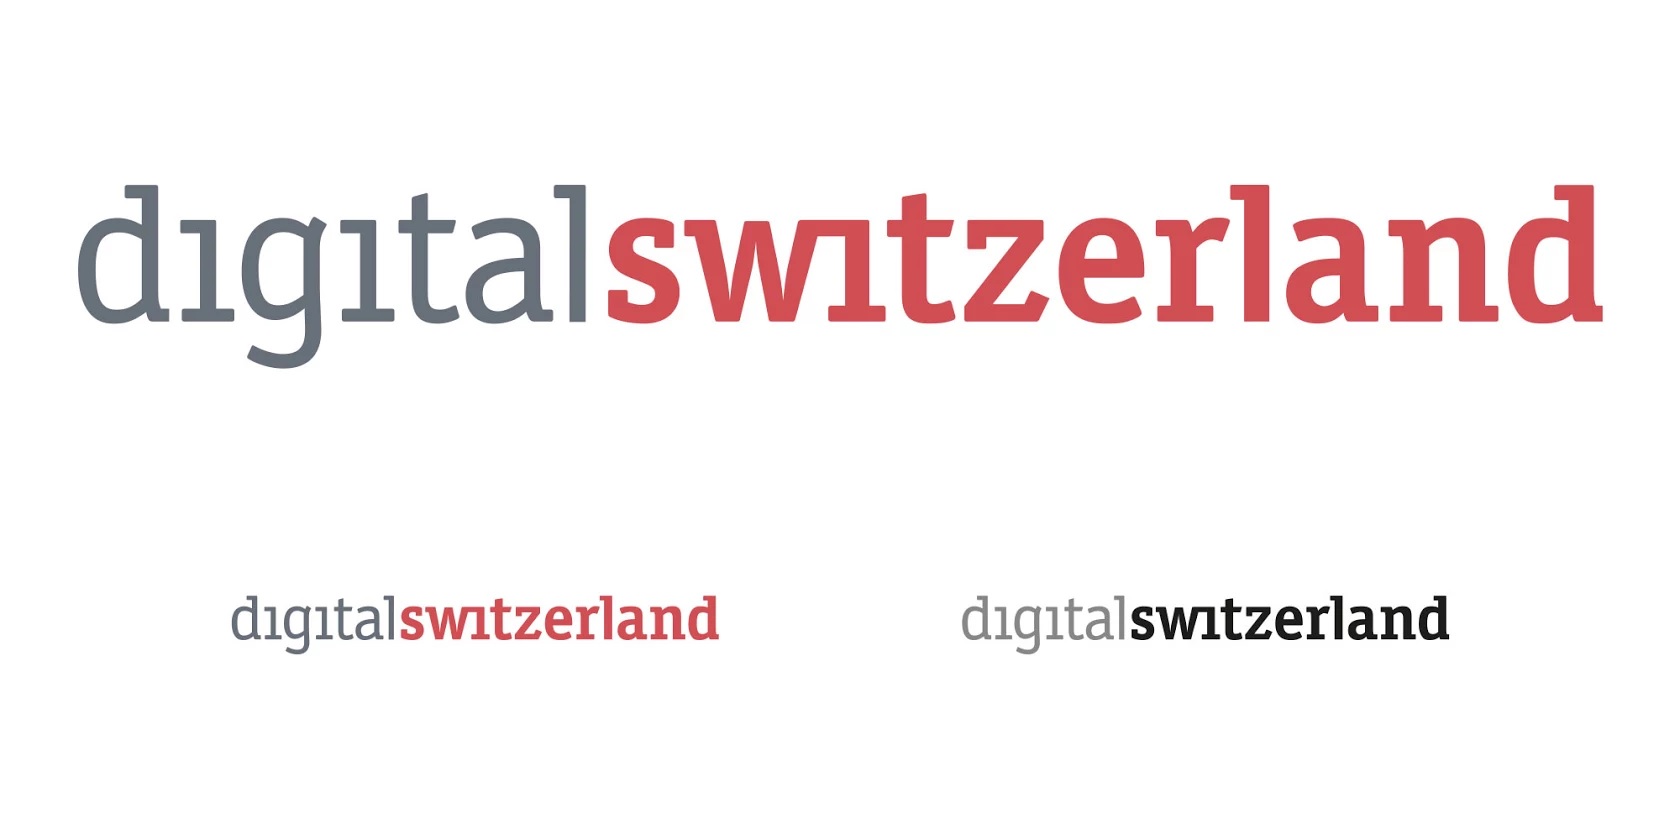 Digitalswitzerland foerdert junge Unternehmen mit Startup Bootcamps - Bild 1